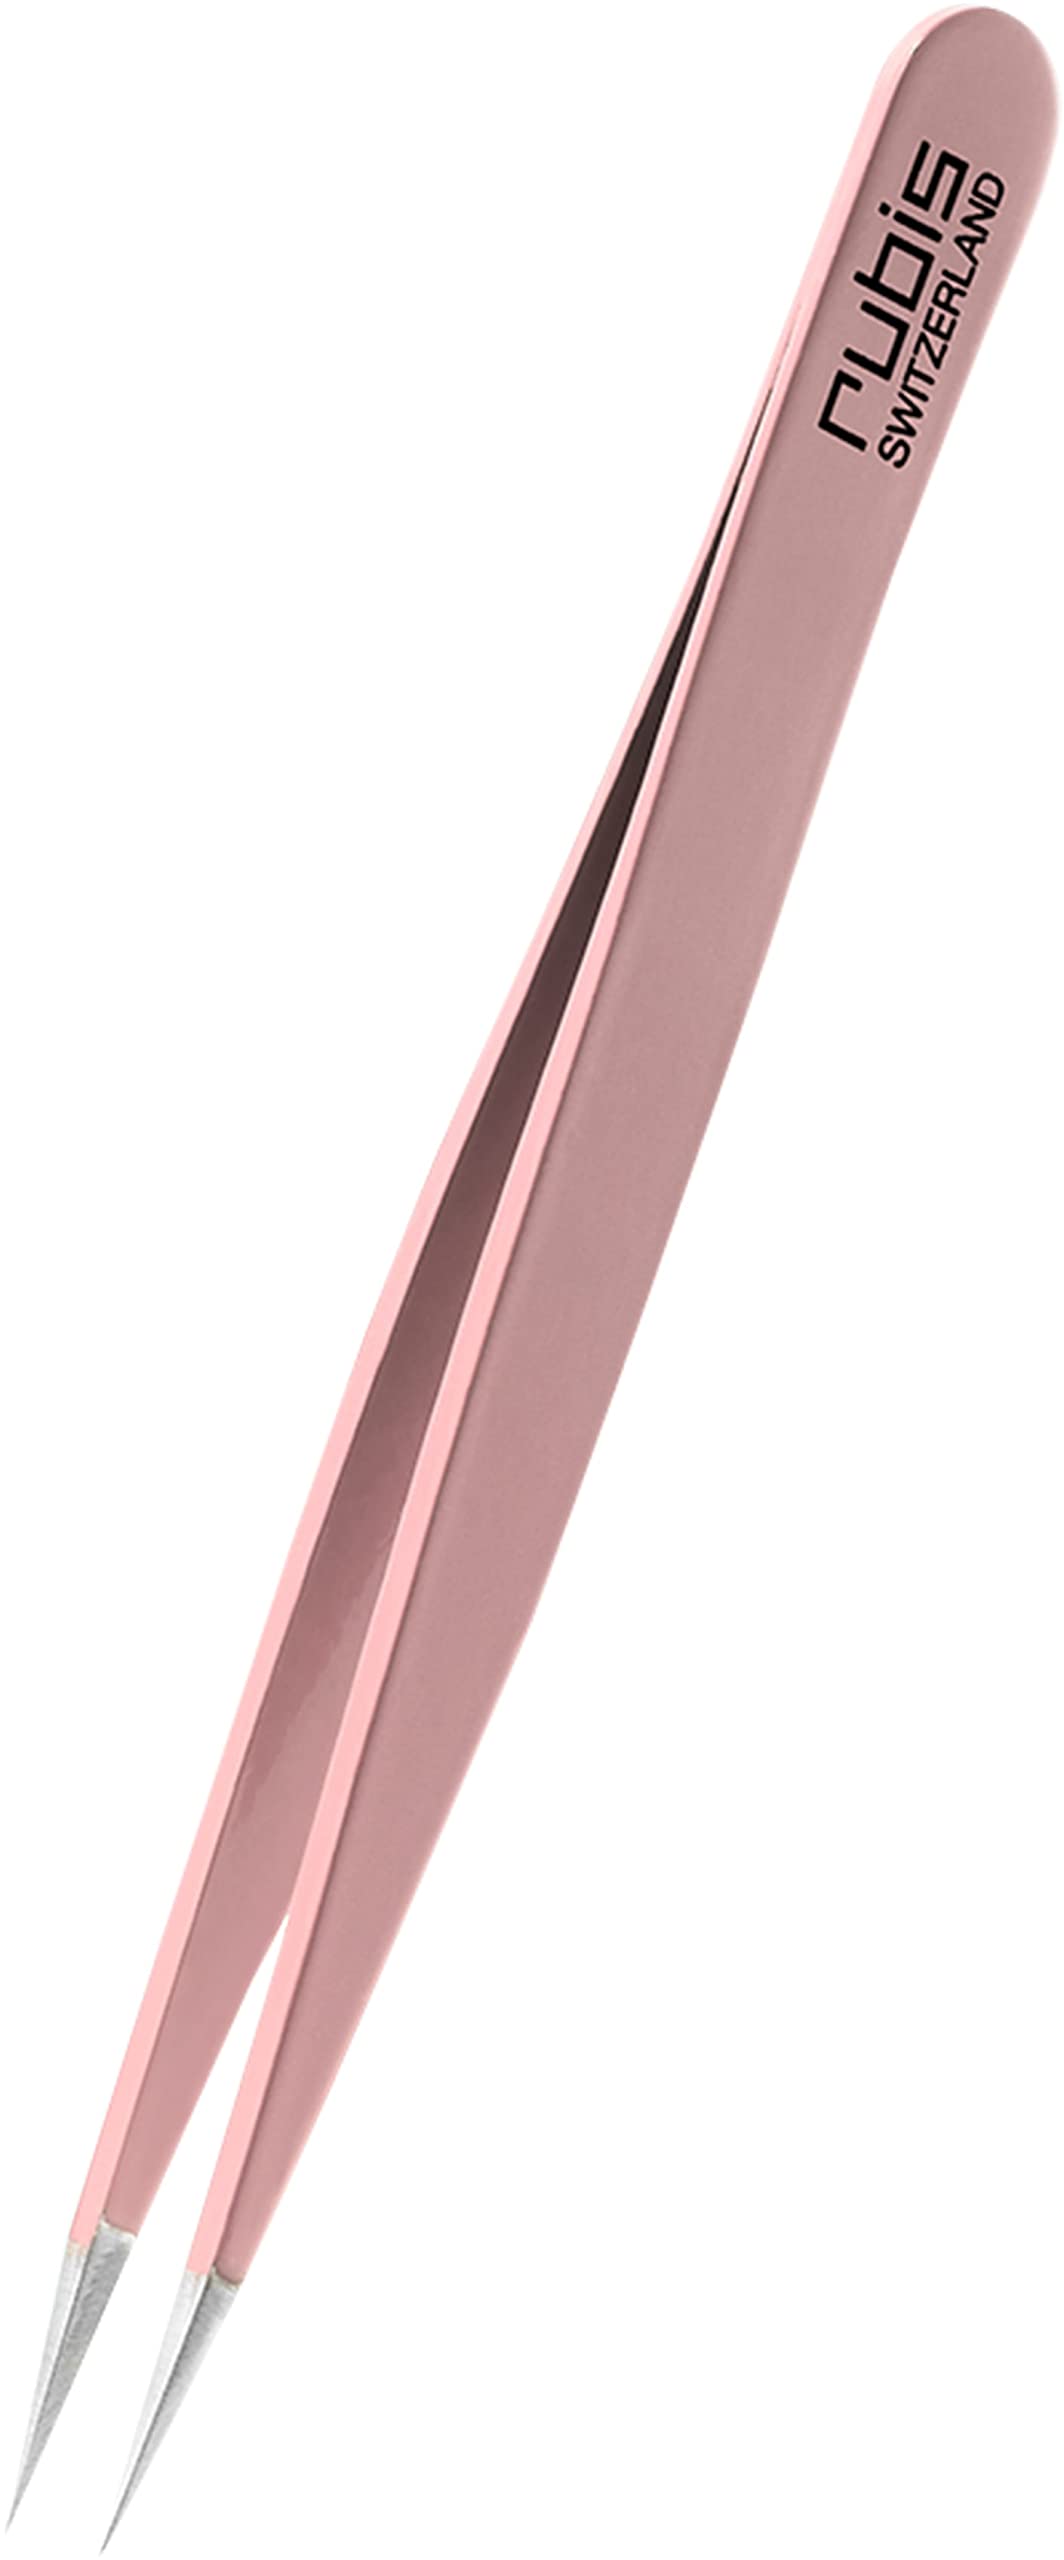 Rubis Splitterpinzette - Spitze Pinzette für Splitter und eingewachsene Haare - Spitzpinzette (Rosa)